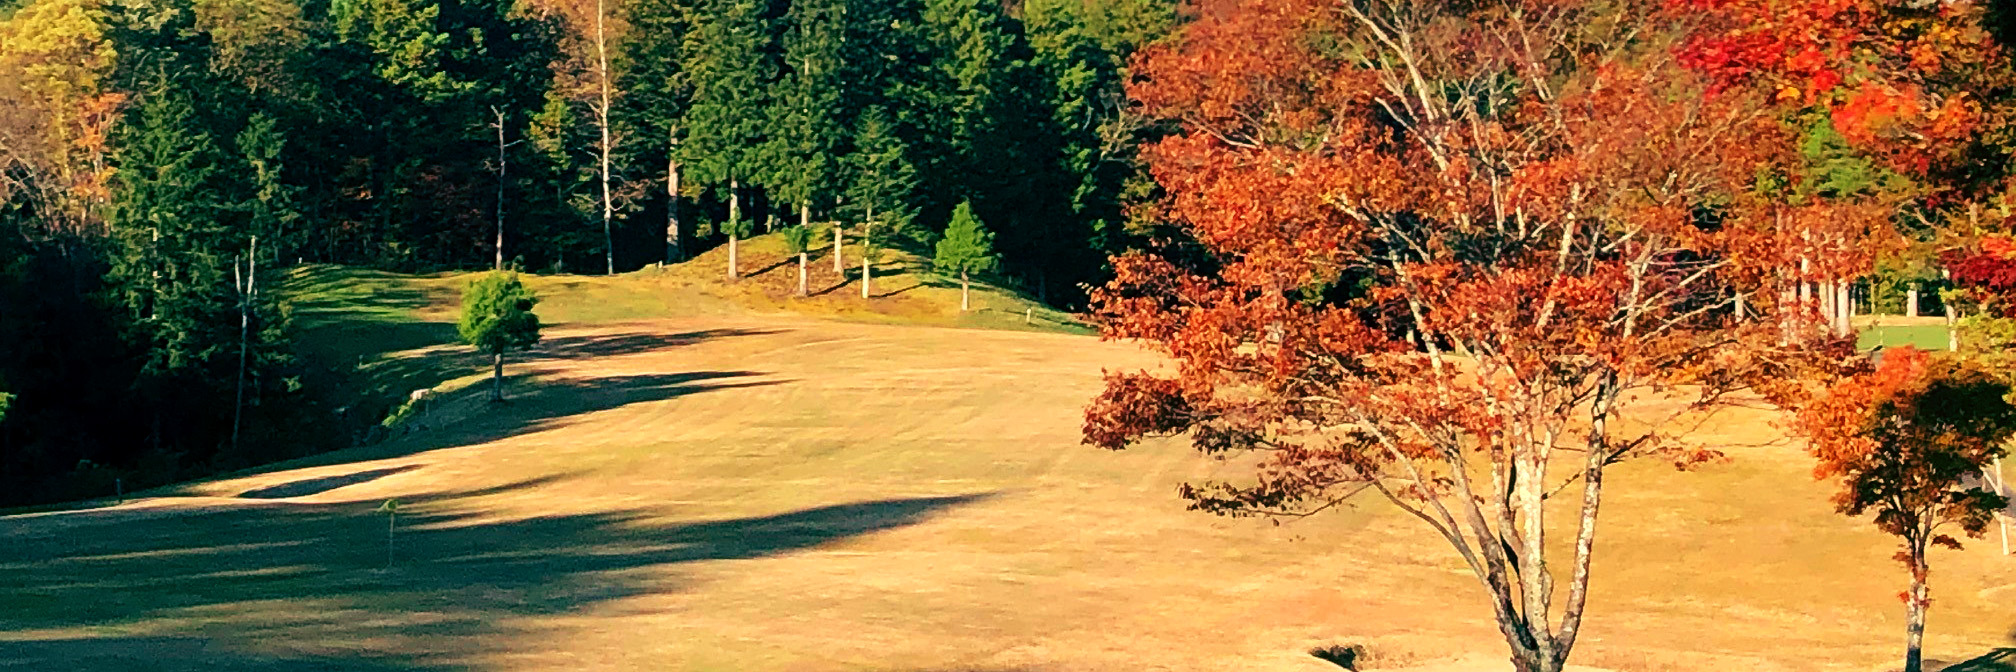 平谷カントリー倶楽部紅葉した木々と芝の写真